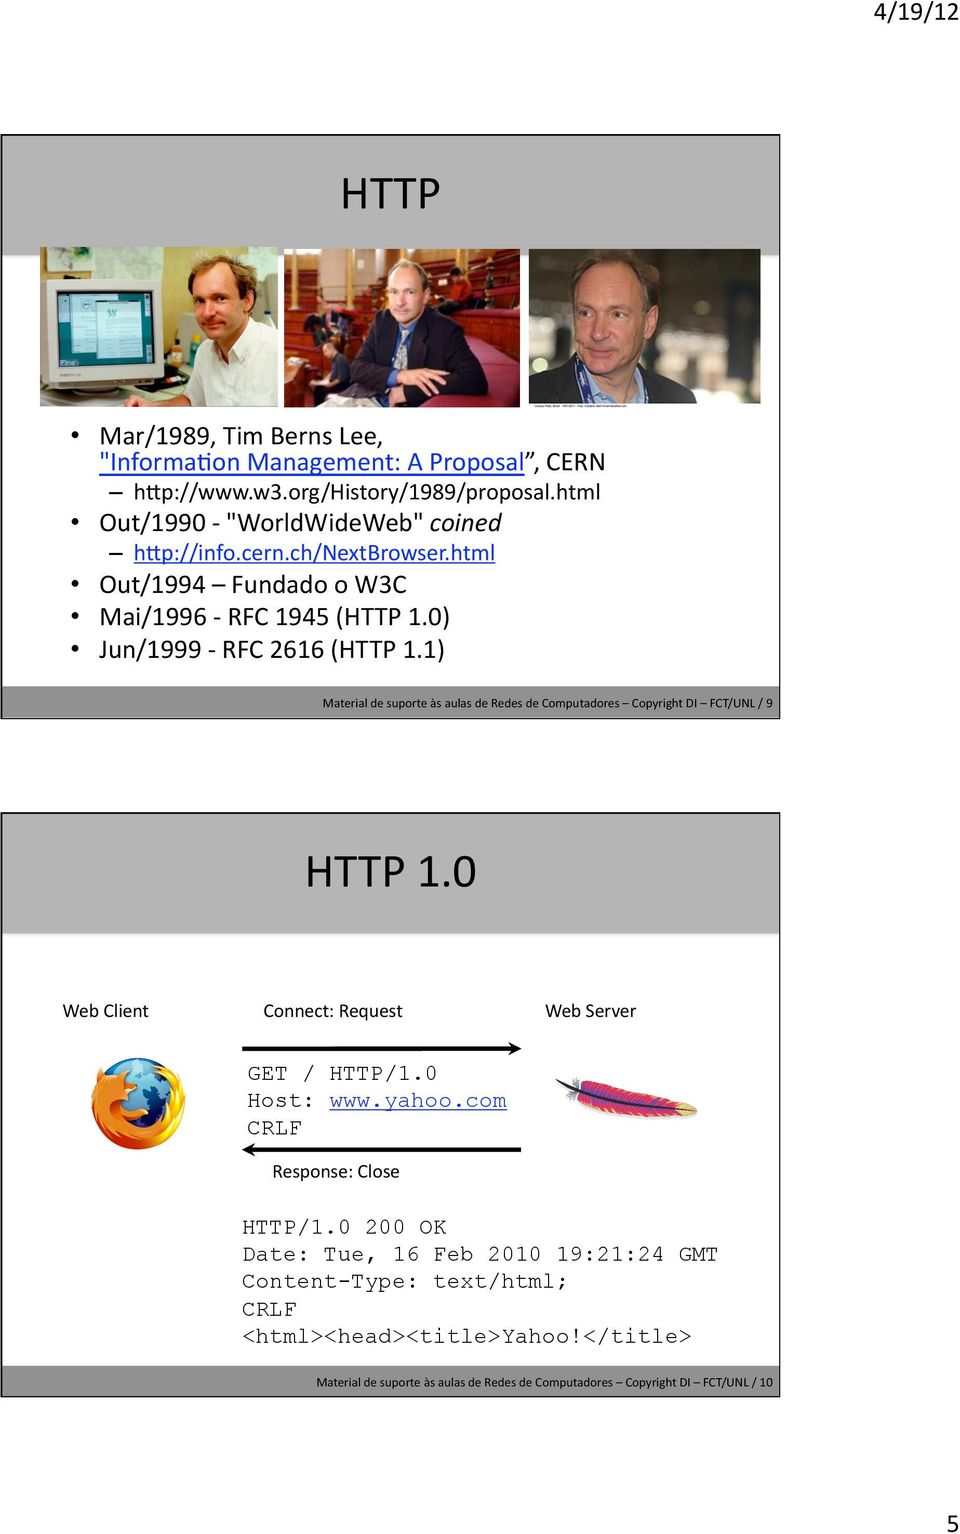 1) Material de suporte às aulas de Redes de Computadores Copyright DI FCT/UNL / 9 HTTP 1.0 Web Client Connect: Request Web Server GET / HTTP/1.0 Host: www.yahoo.